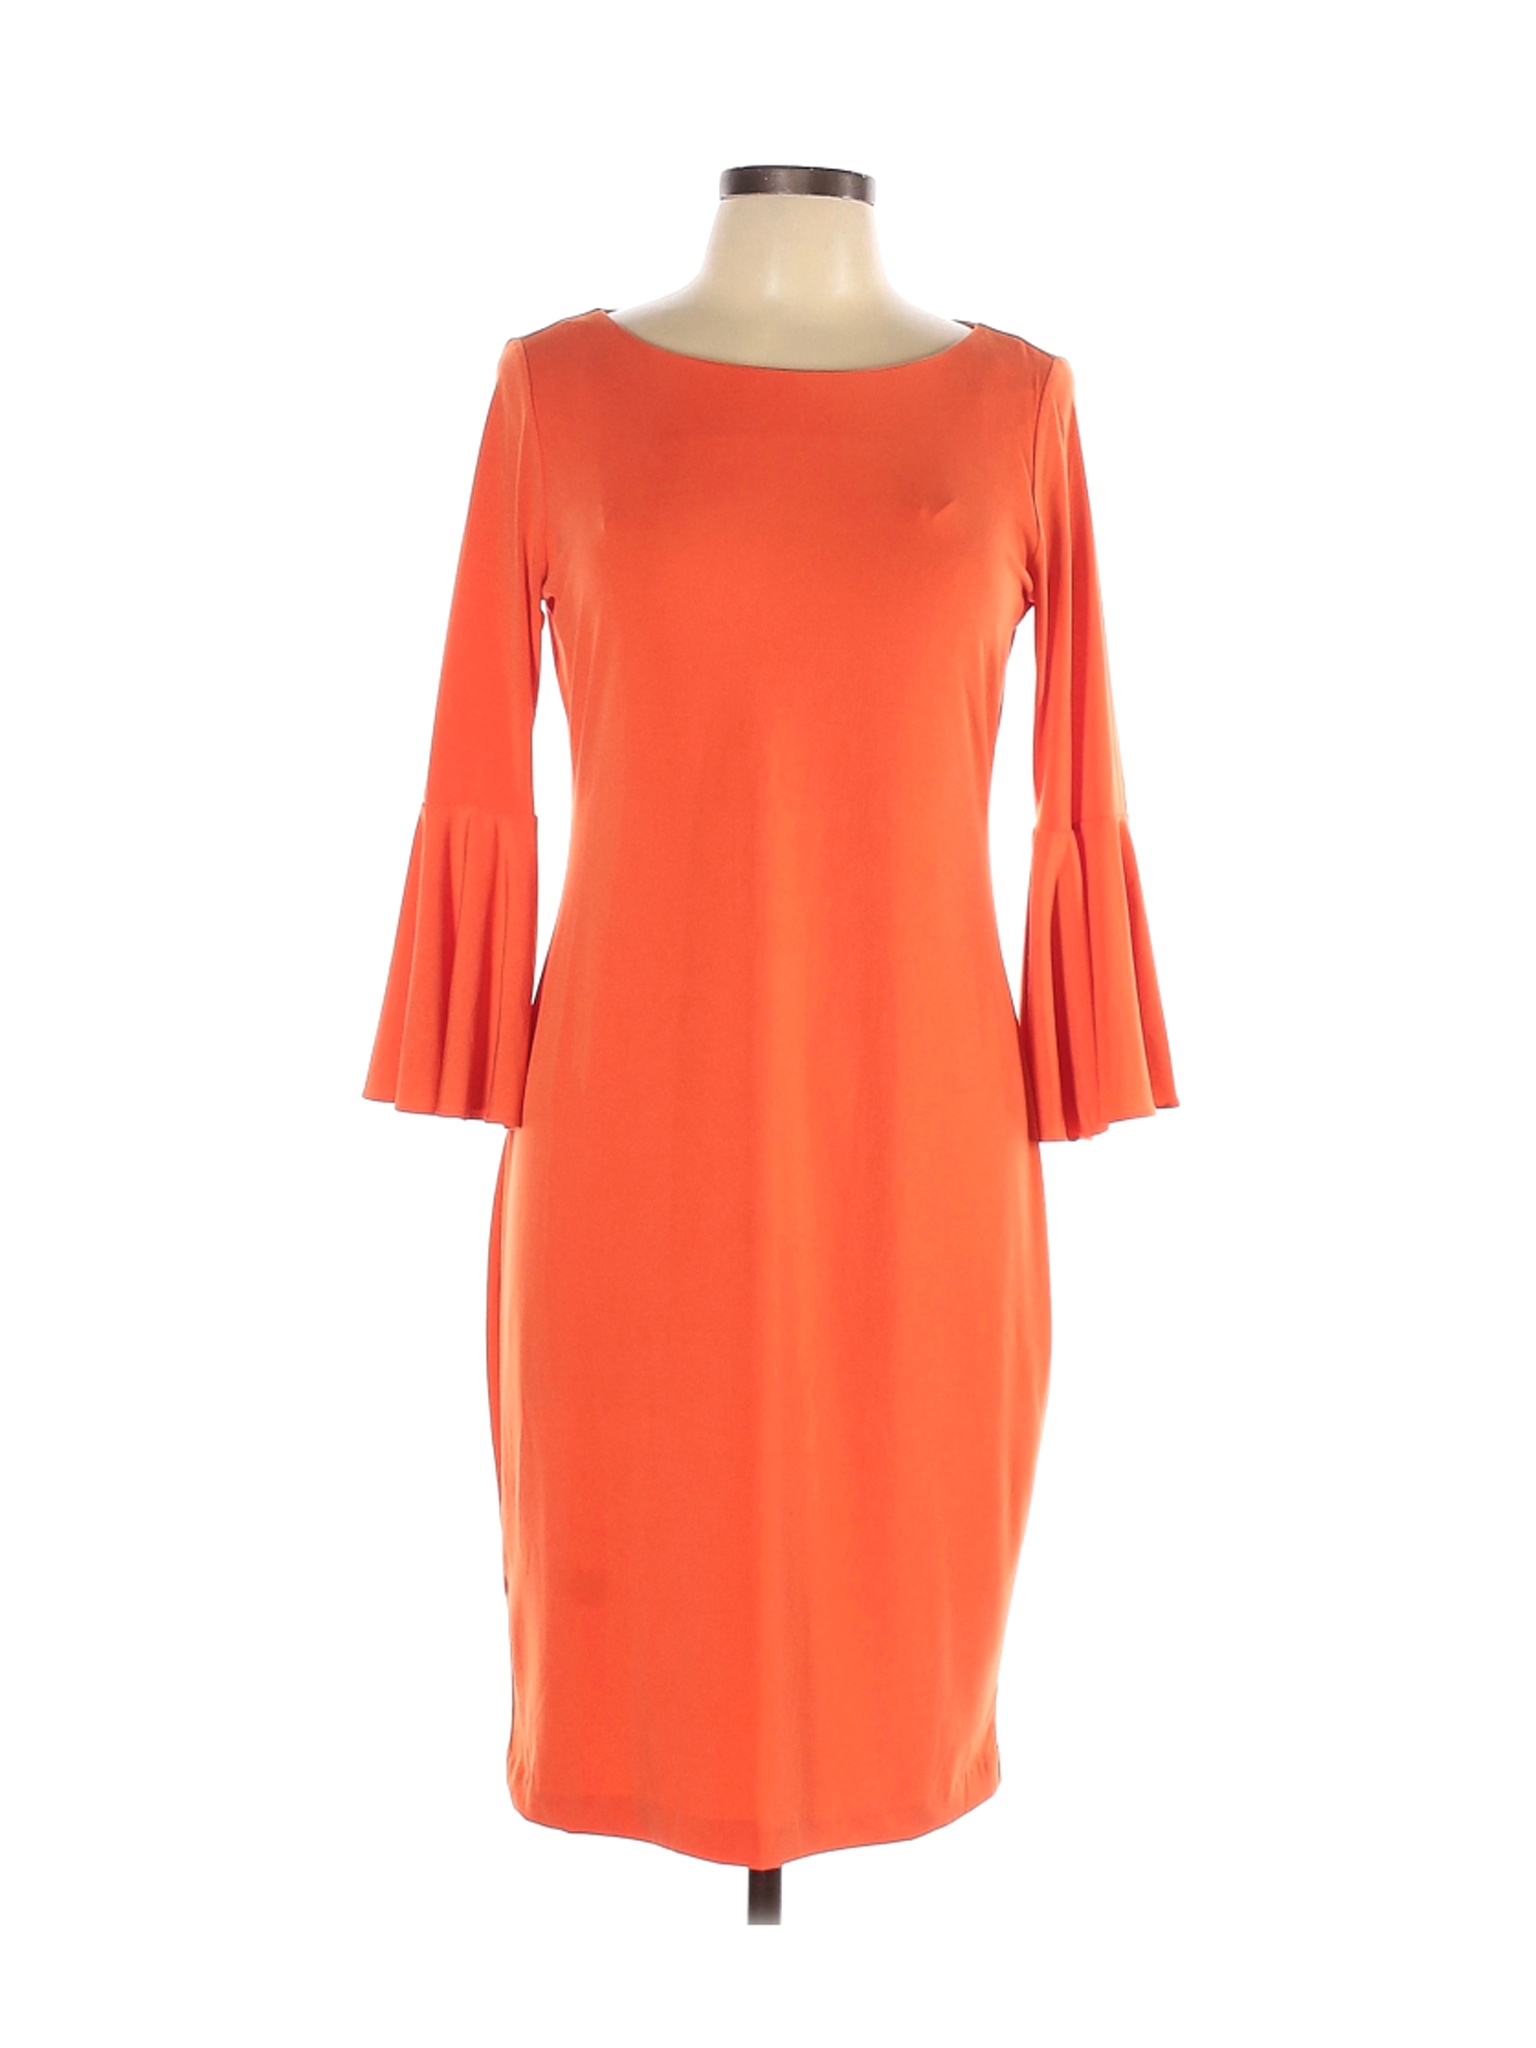 Calvin Klein Women Orange Casual Dress 10 | eBay